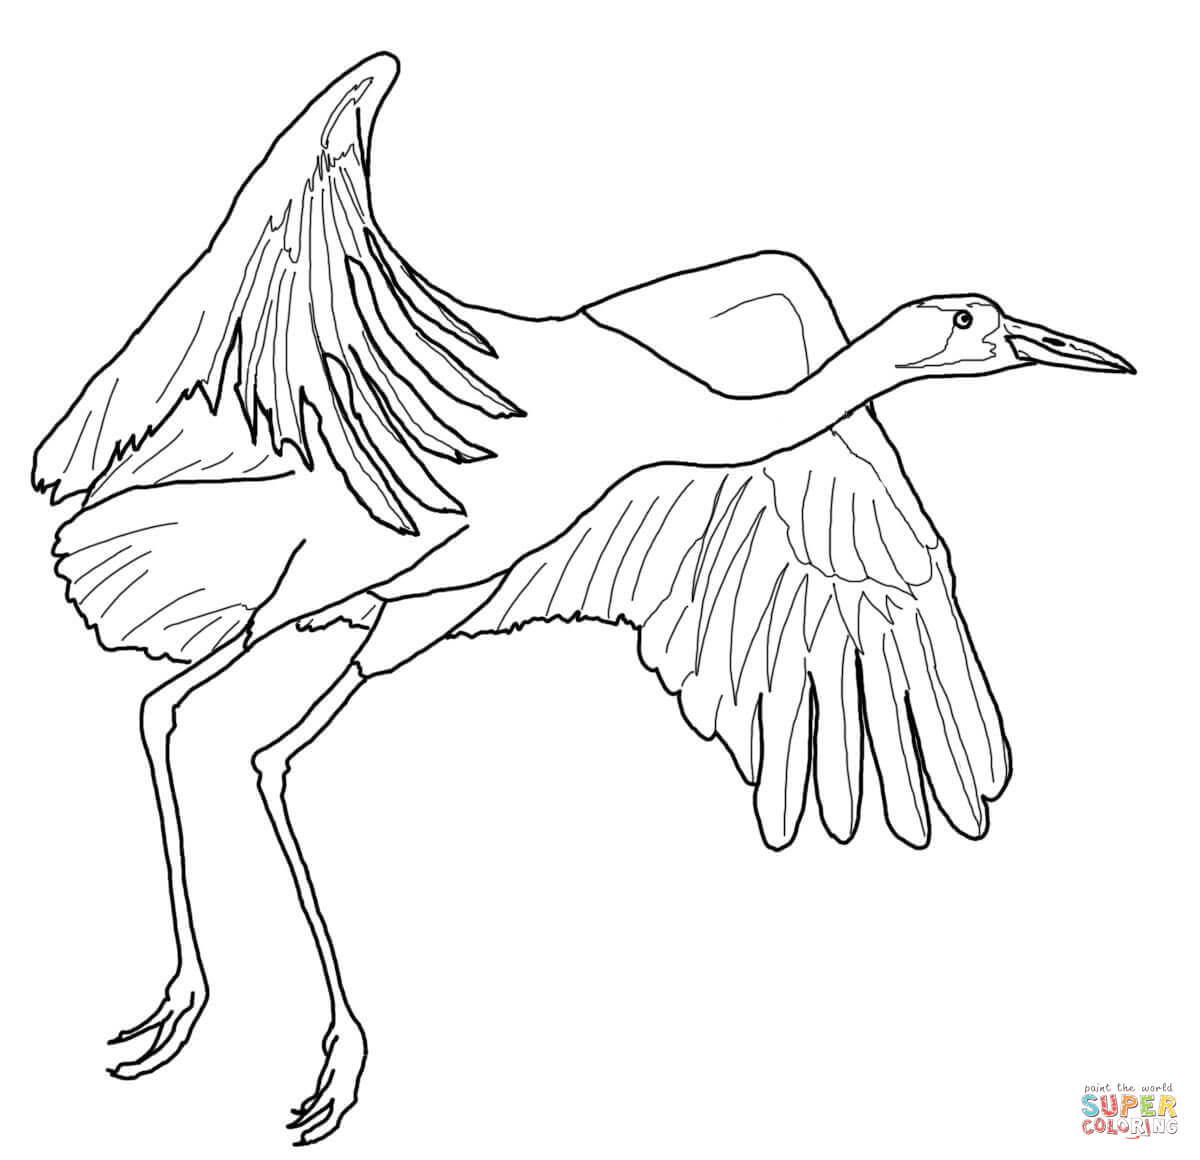 Siberian Crane coloring #17, Download drawings